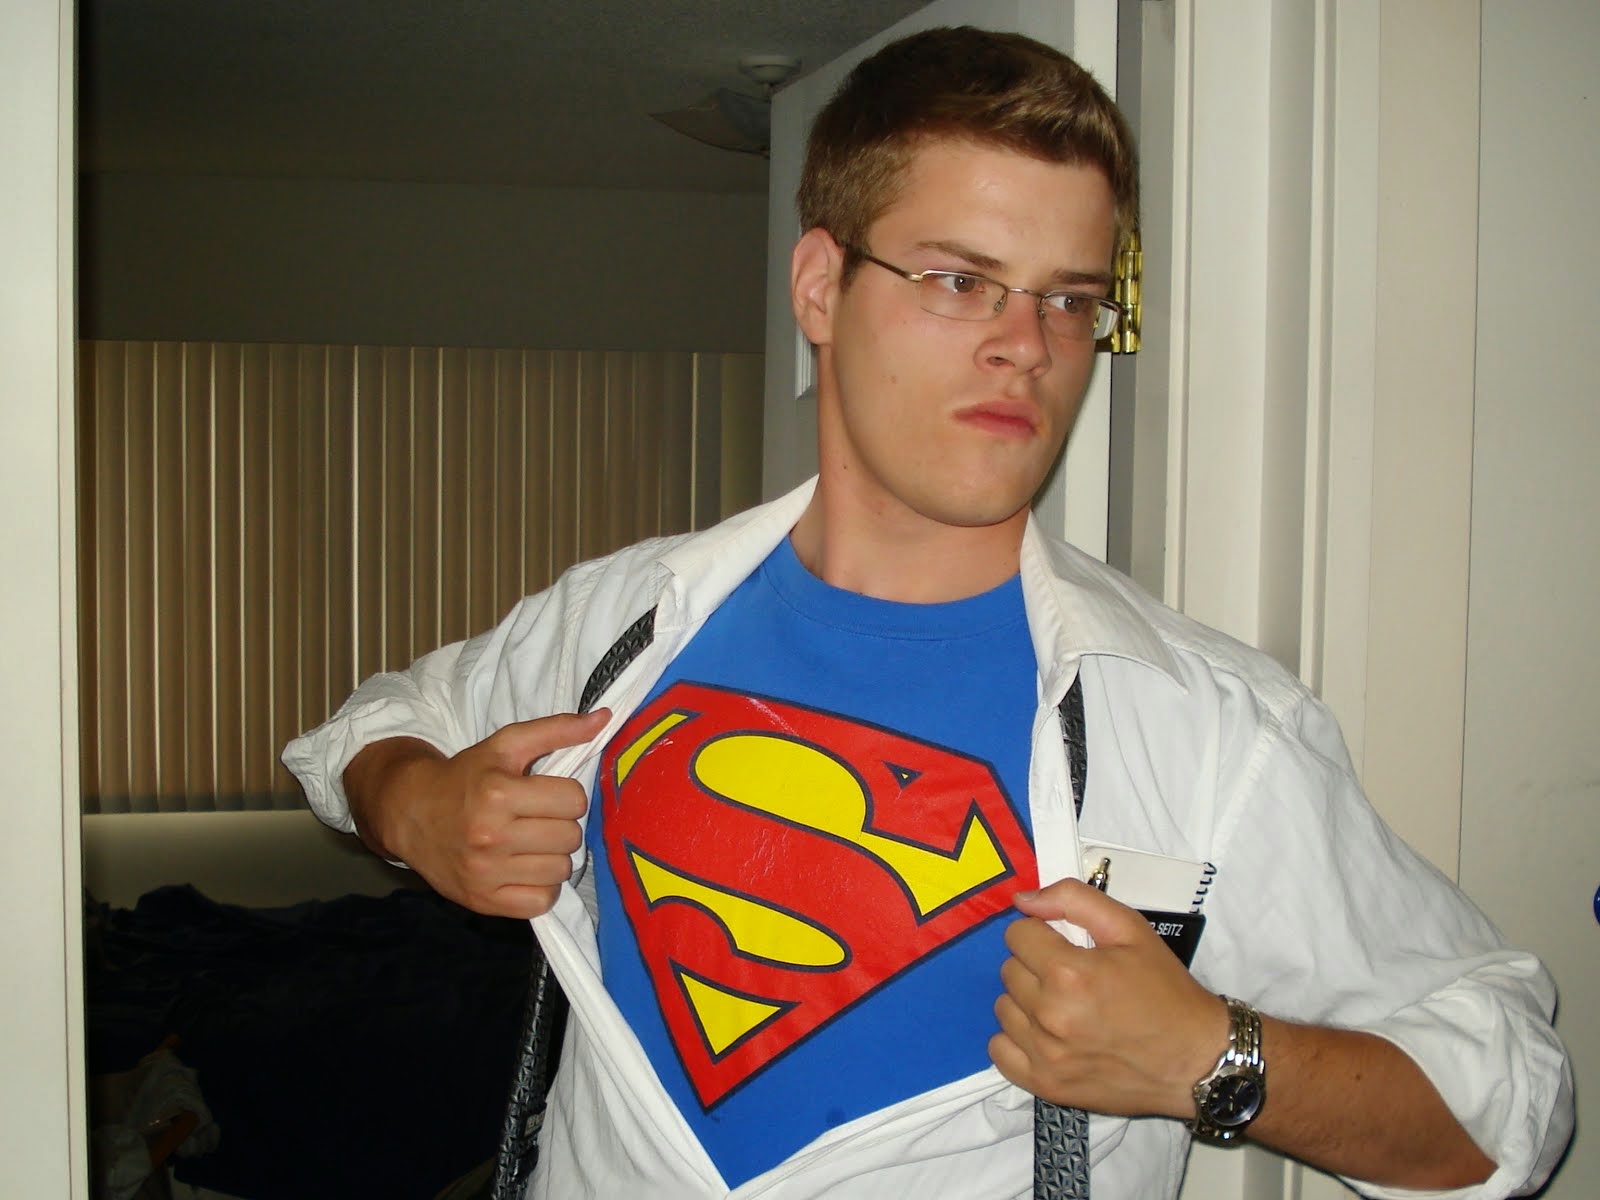 Yes! I am Superman!